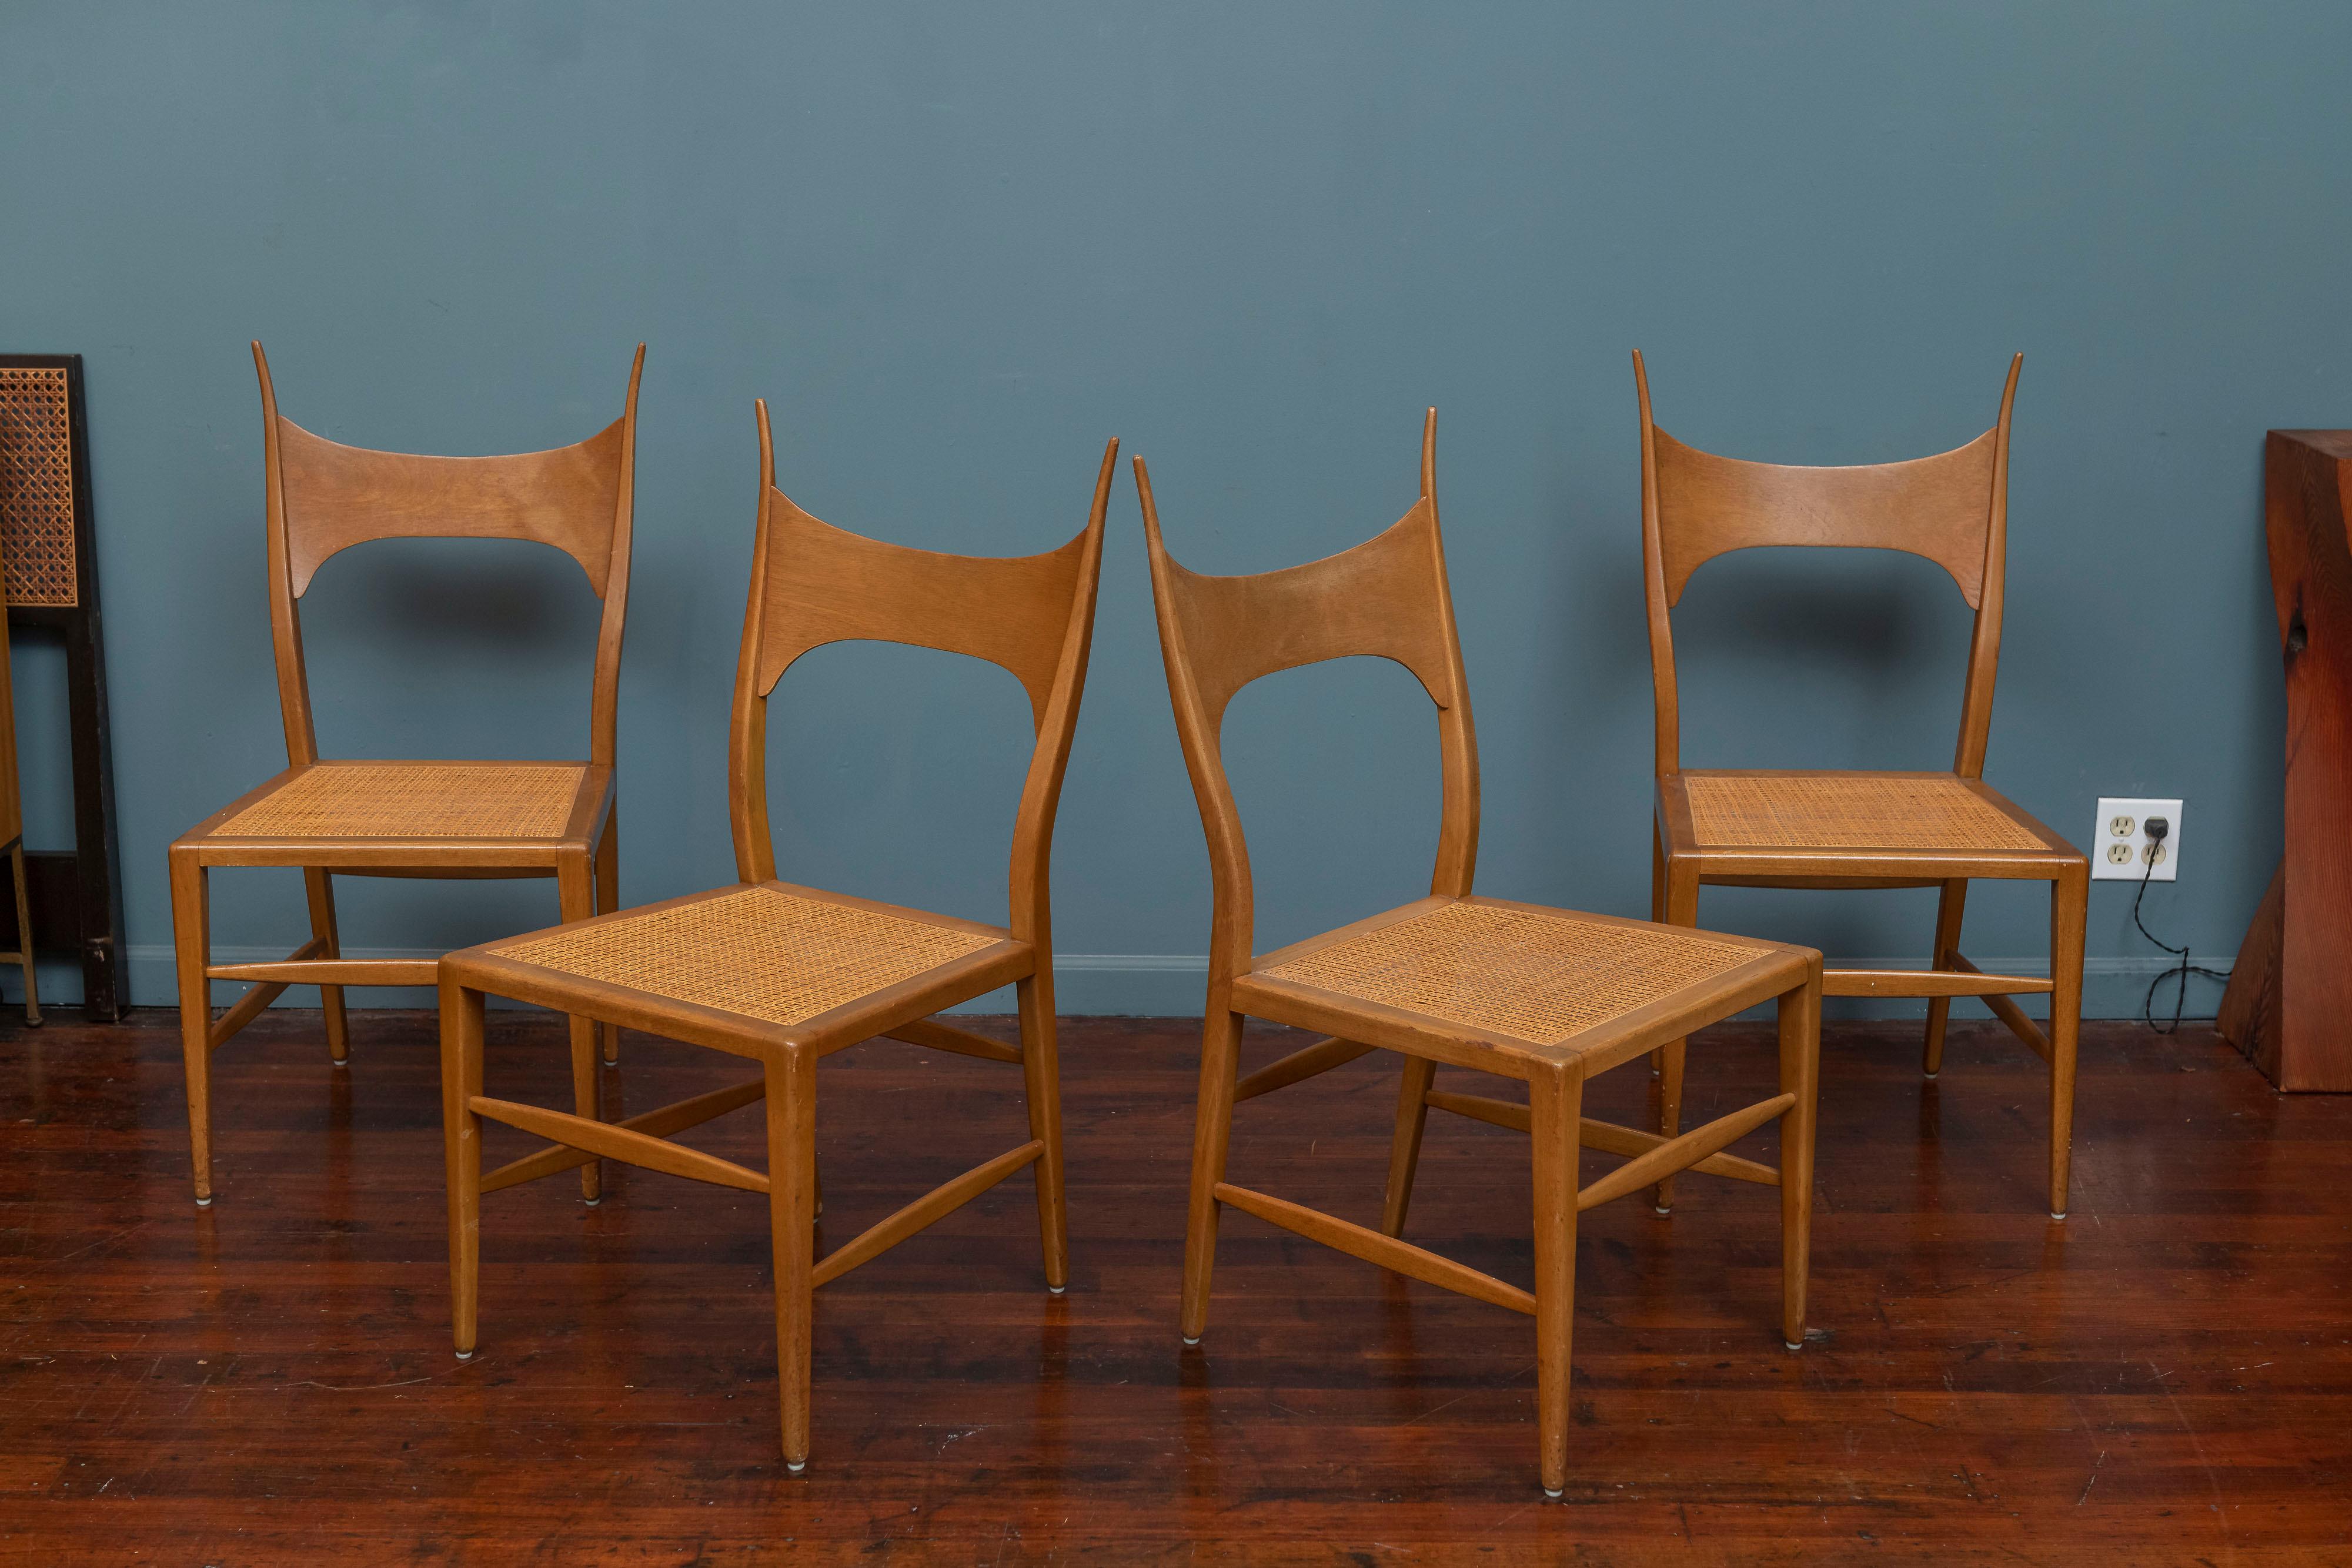 Edward Wormley Design Geweihstühle für Dunbar, Modell 5580. 
Seltener und attraktiver Design-Stuhl von Wormley in der Blütezeit seiner Design-Karriere. Die Rahmen sind aus gebleichtem Mahagoni und die Sitze aus Schilfrohr. Die Stühle sind elegant